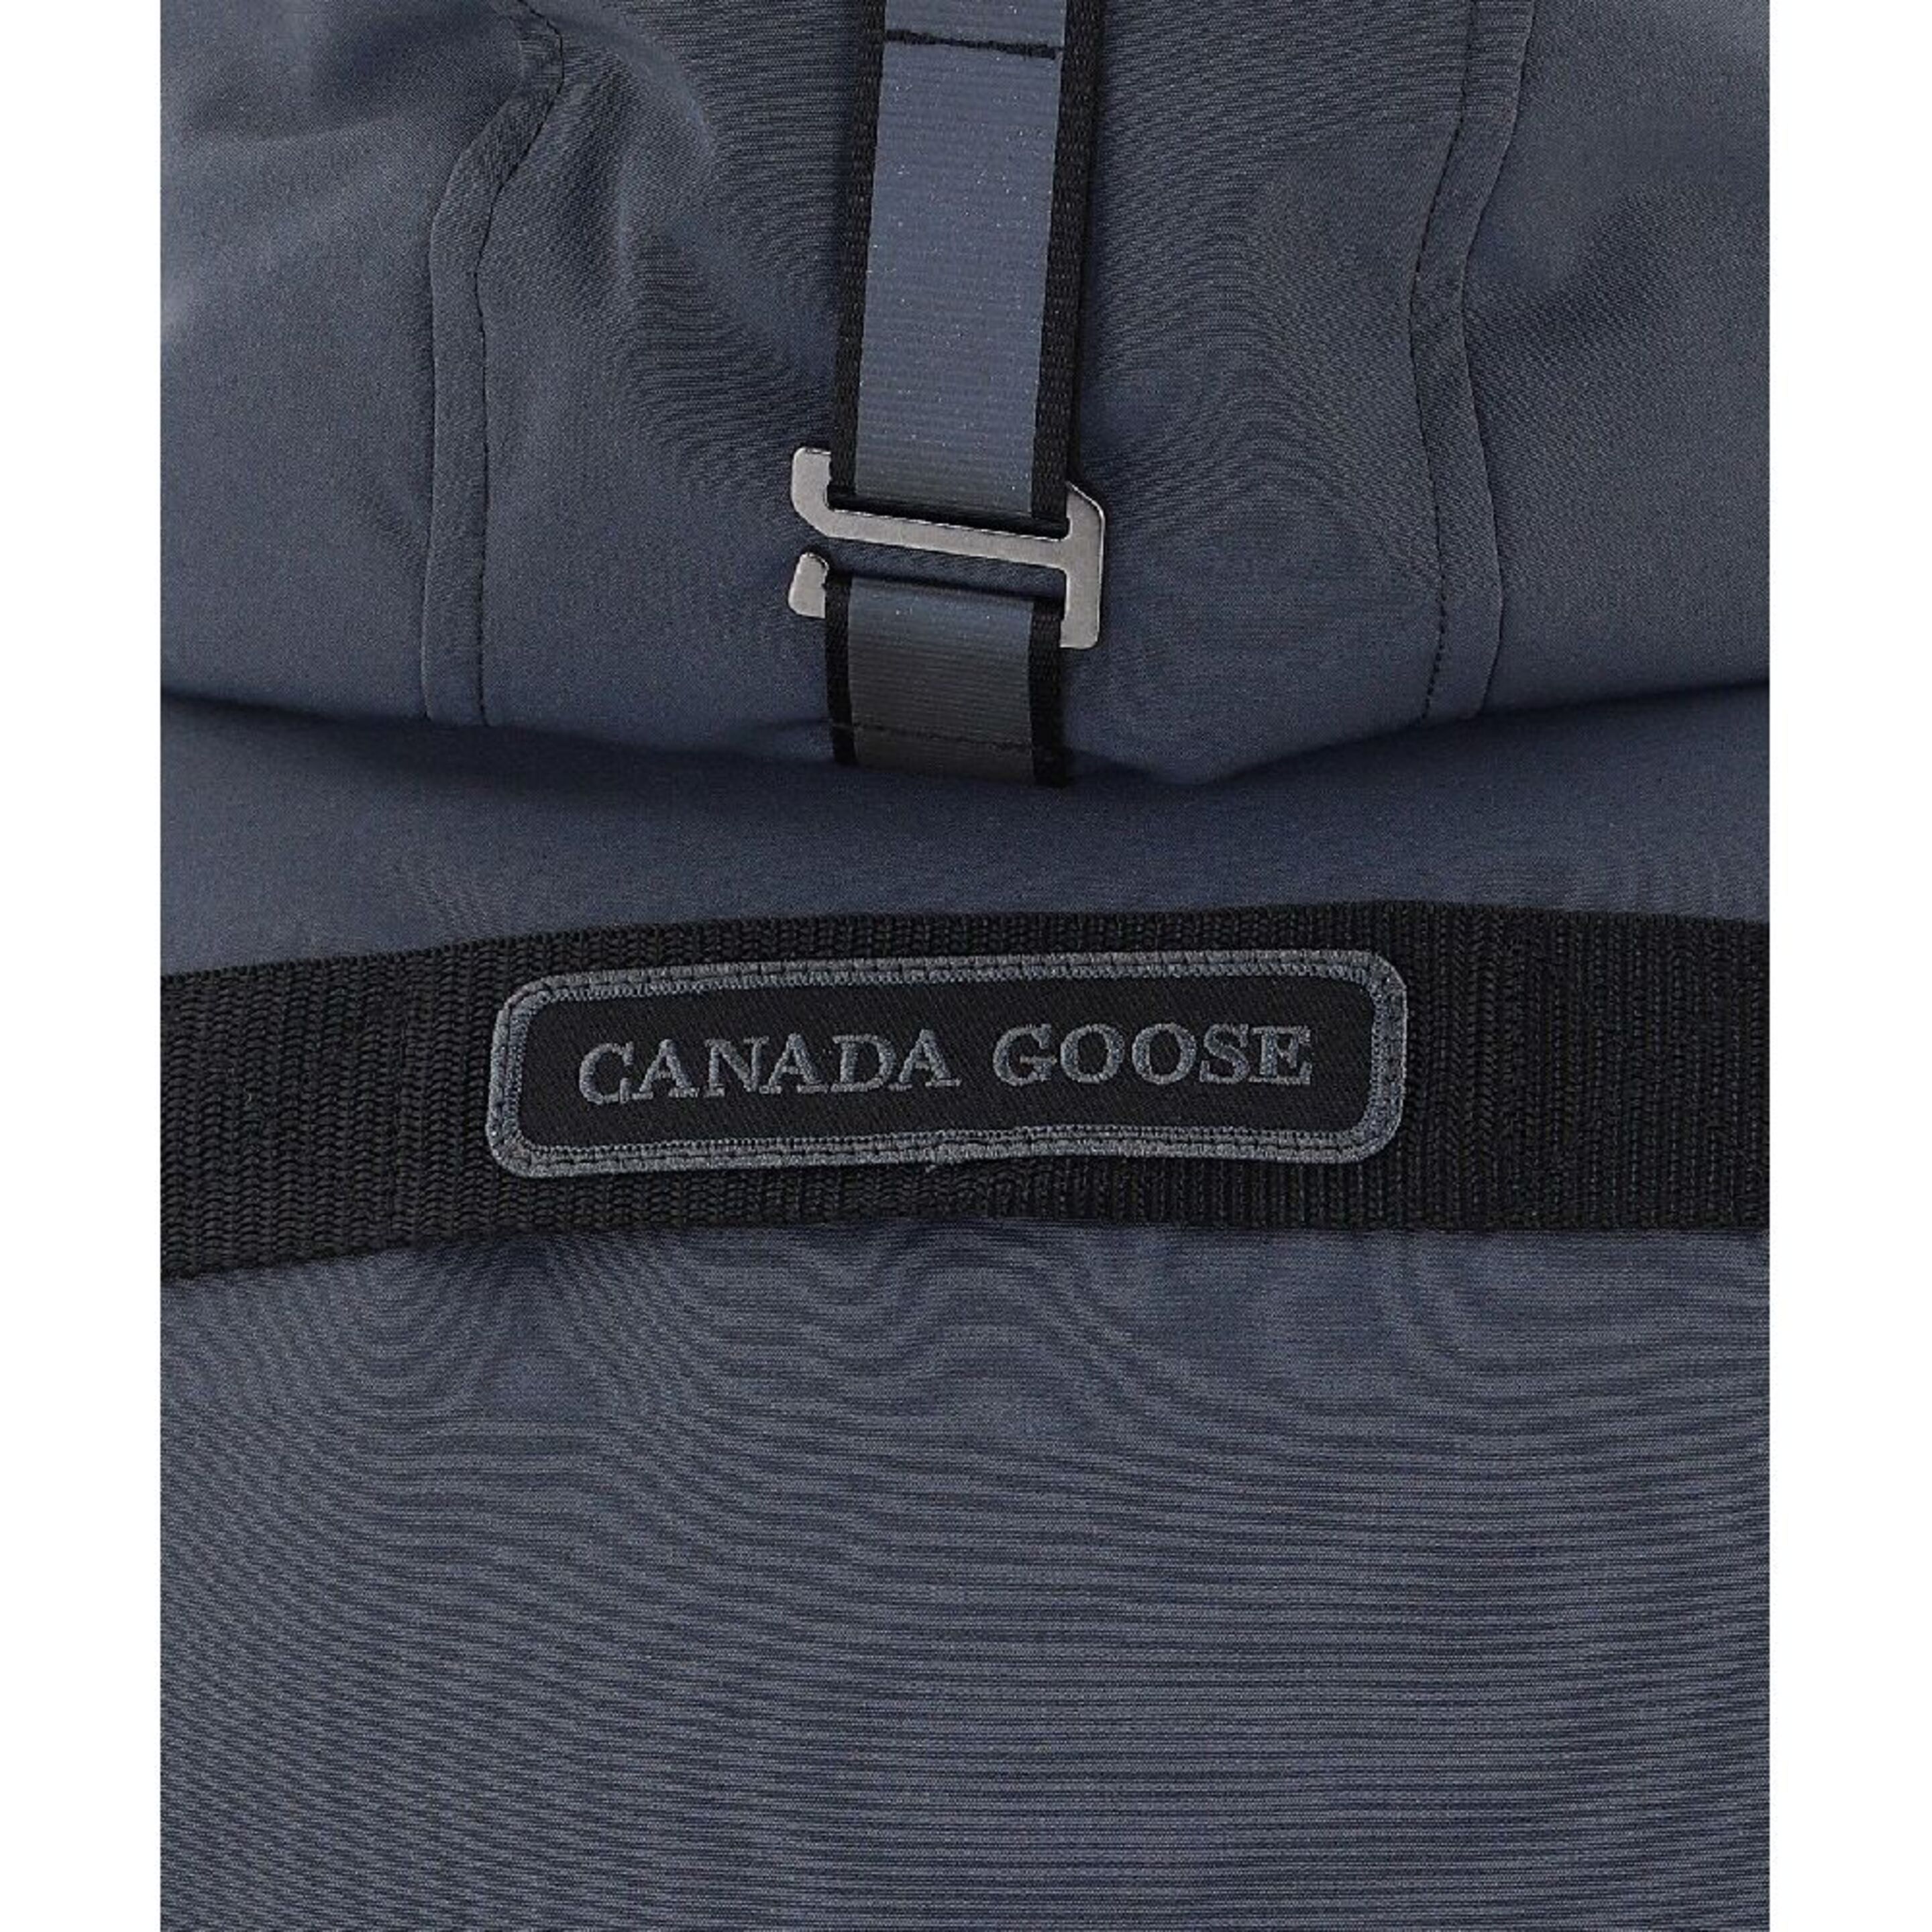 Cazadora Canada Goose Cg3824lb35456